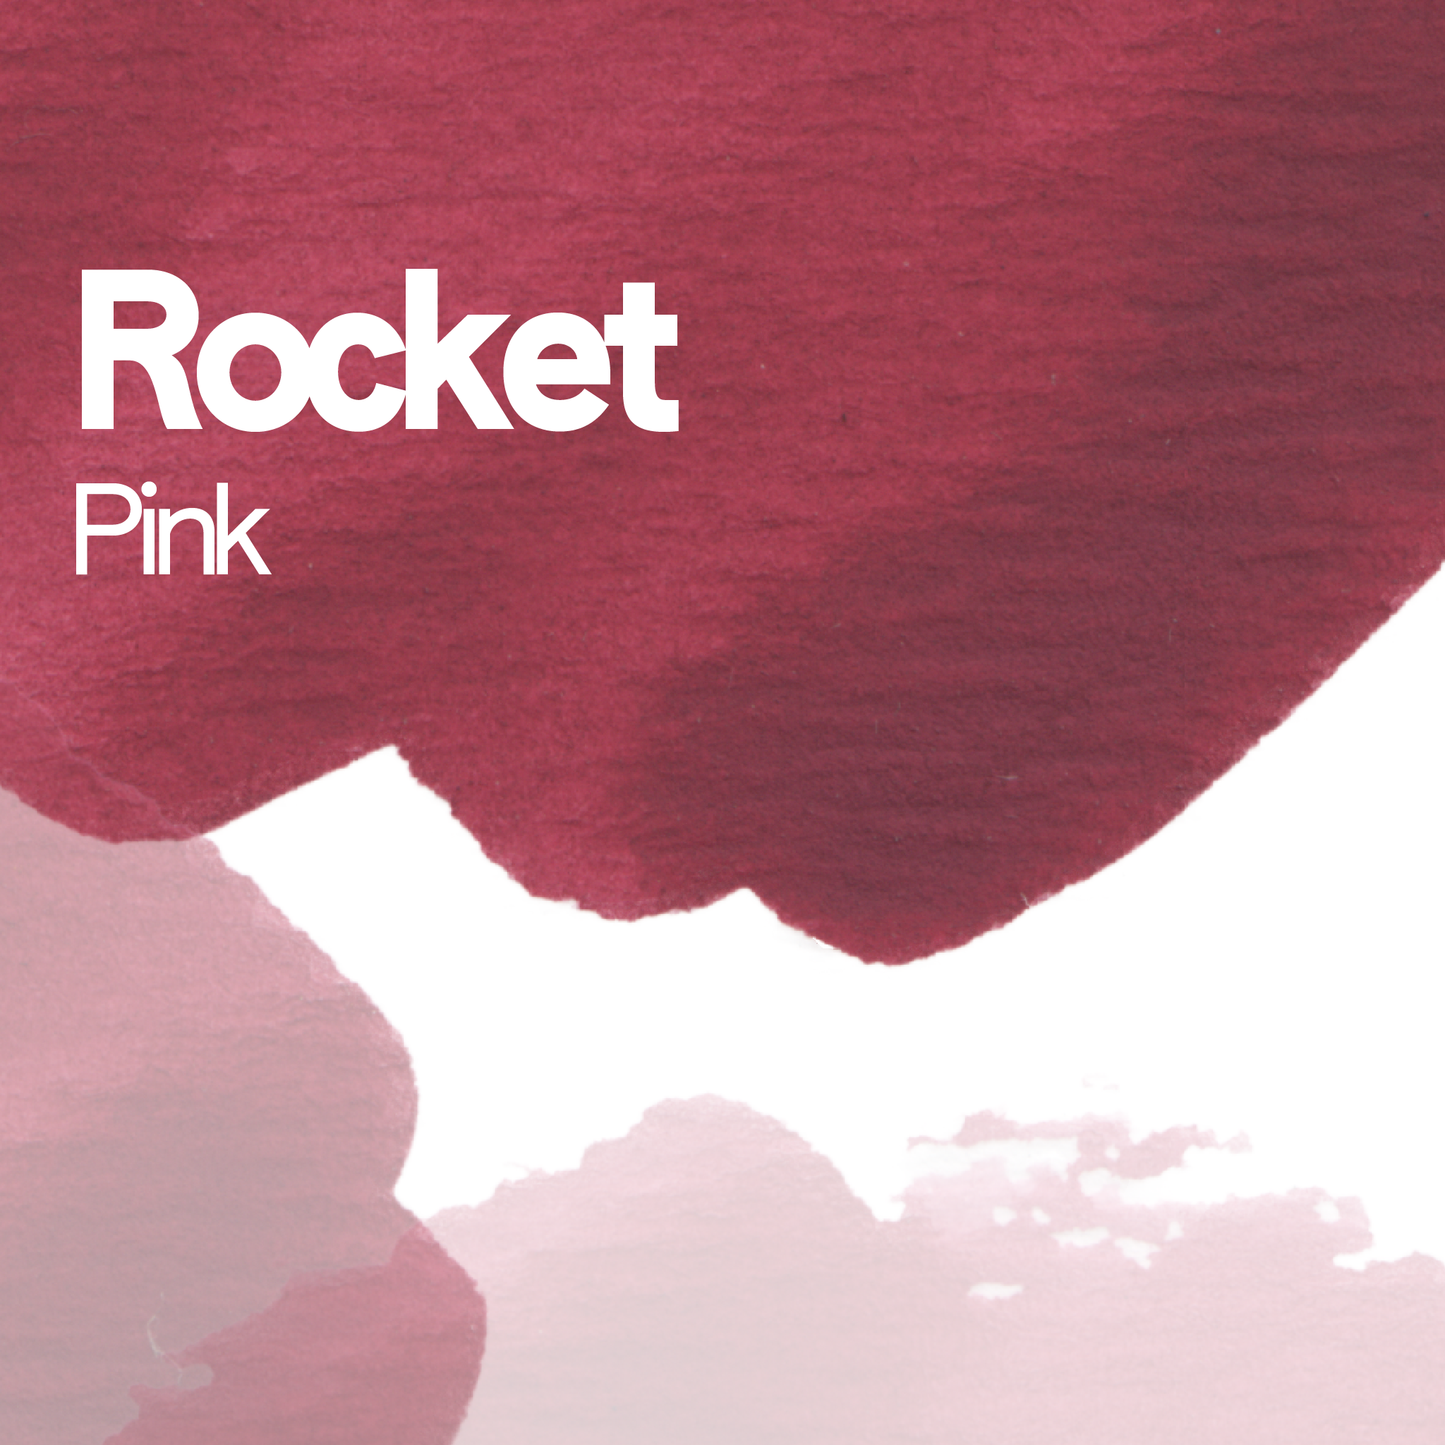 Rocket Pink aquarelle artisanale vegan